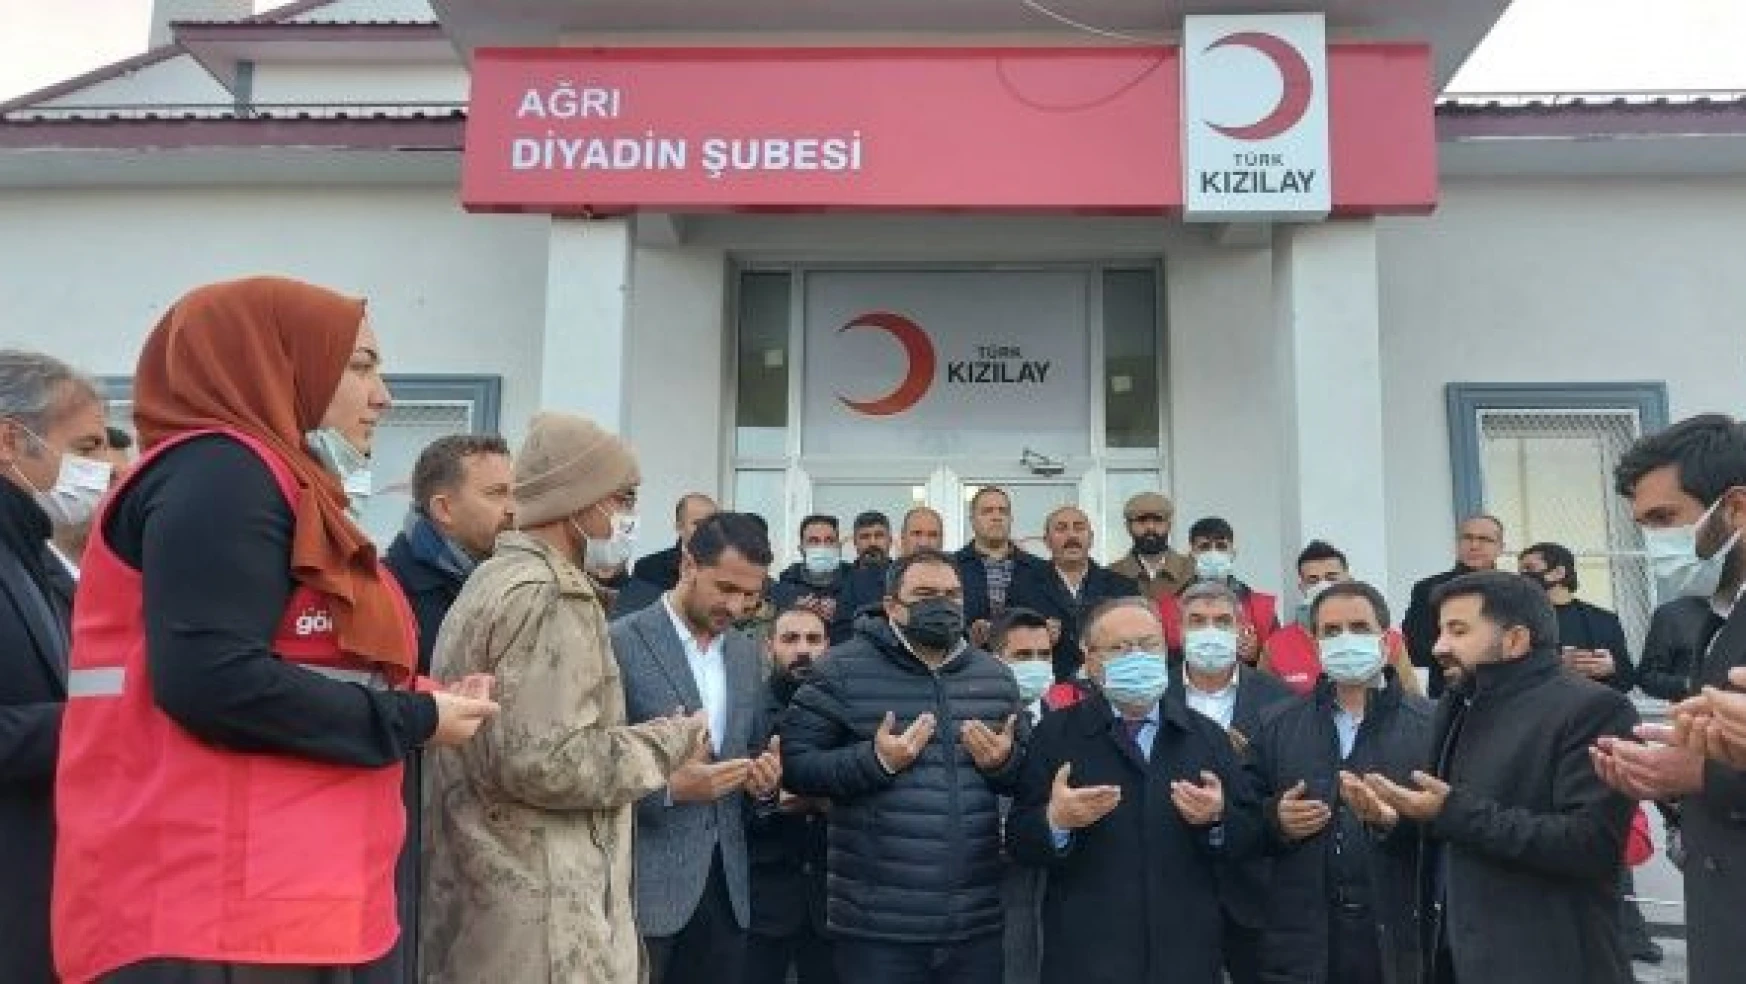 Türk Kızılayı artık Diyadin'de